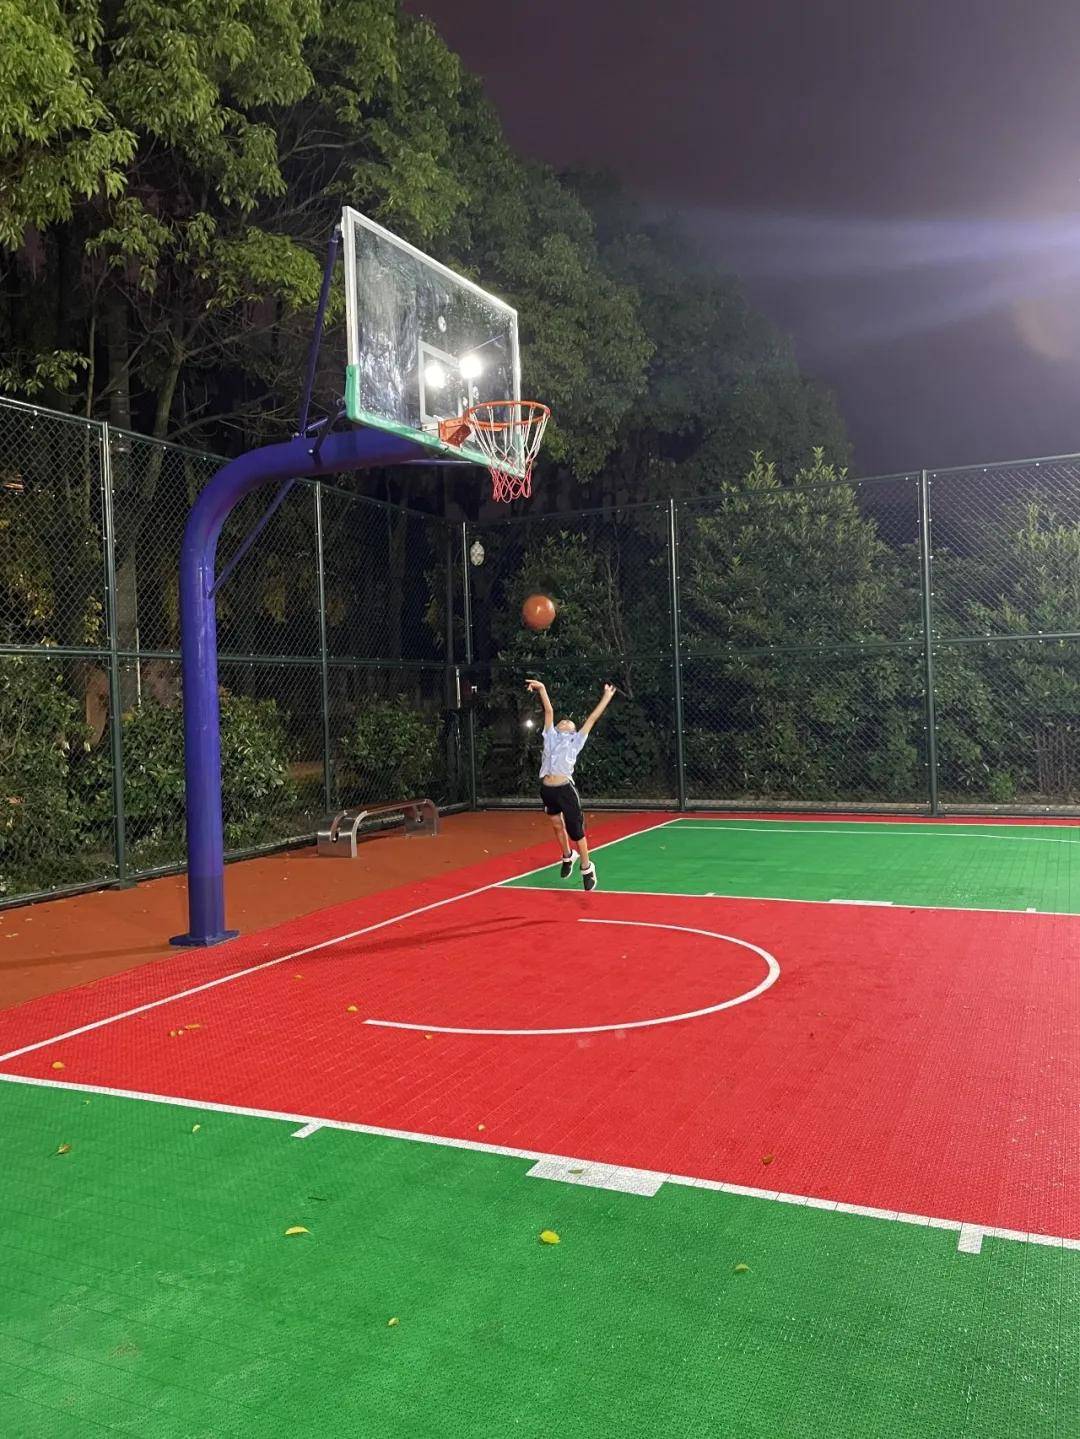 堡城村建起高标准悬浮式篮球场,村民打球有了好去处